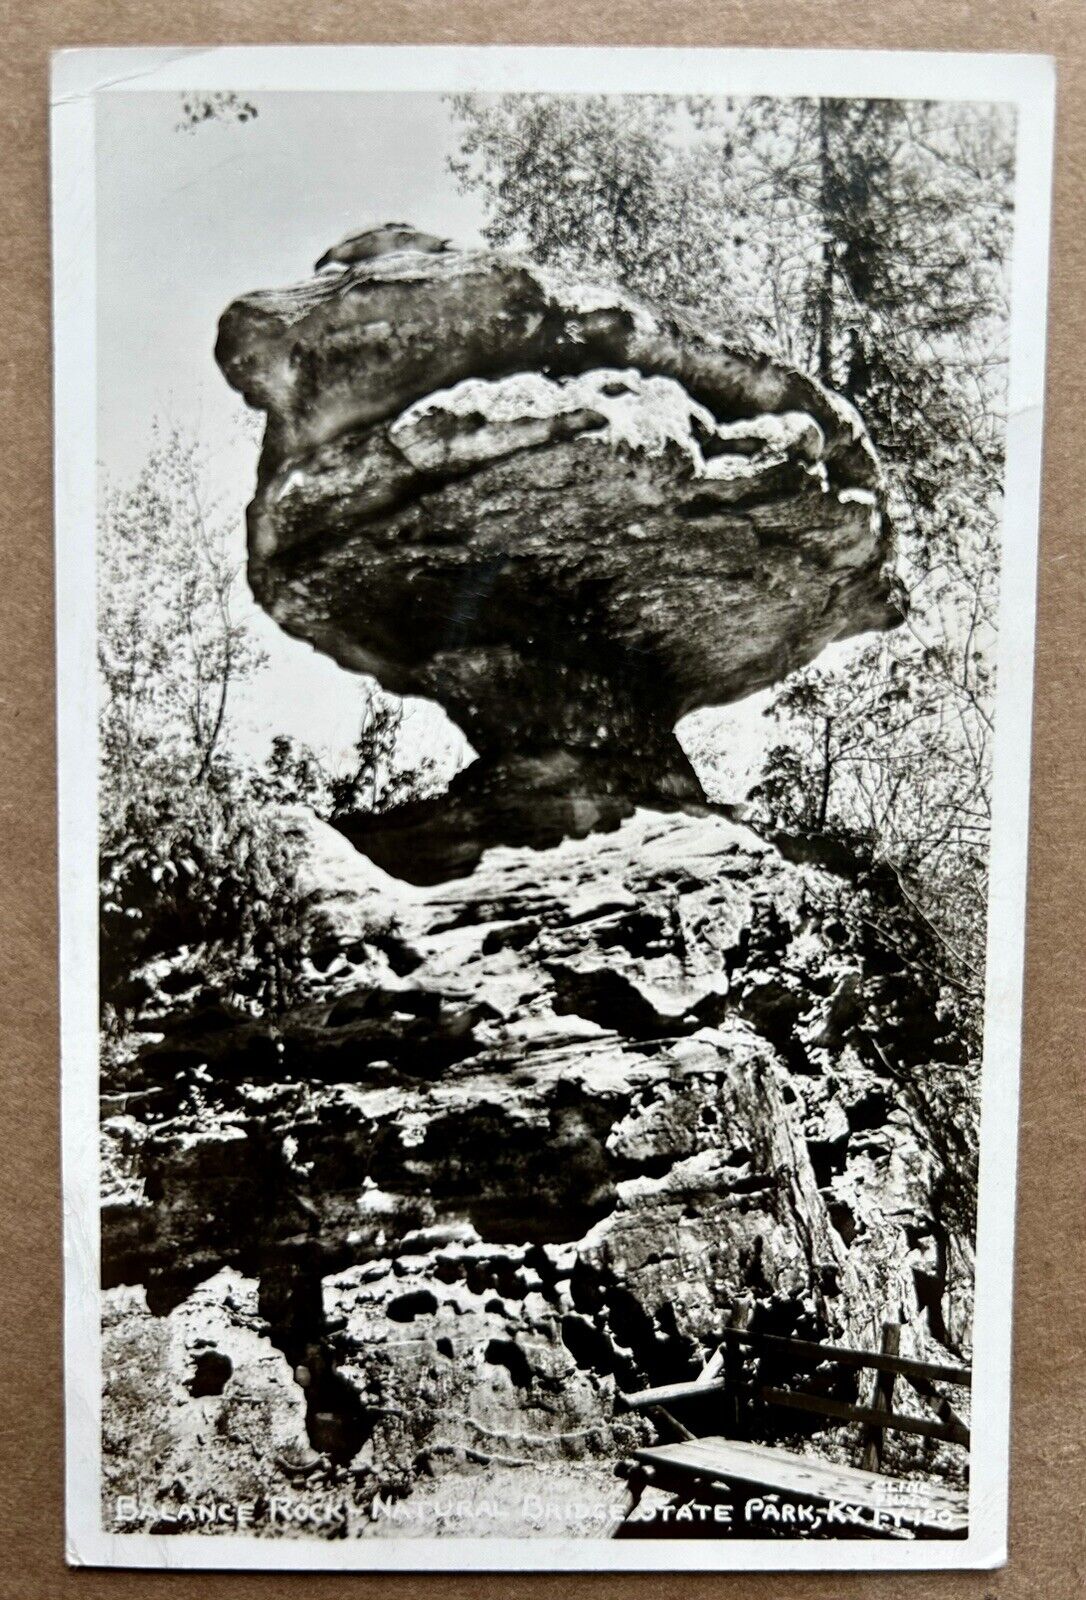 Balance Rock. Natural Bridge State Park Kentucky RPPC Real Photo Postcard 1947